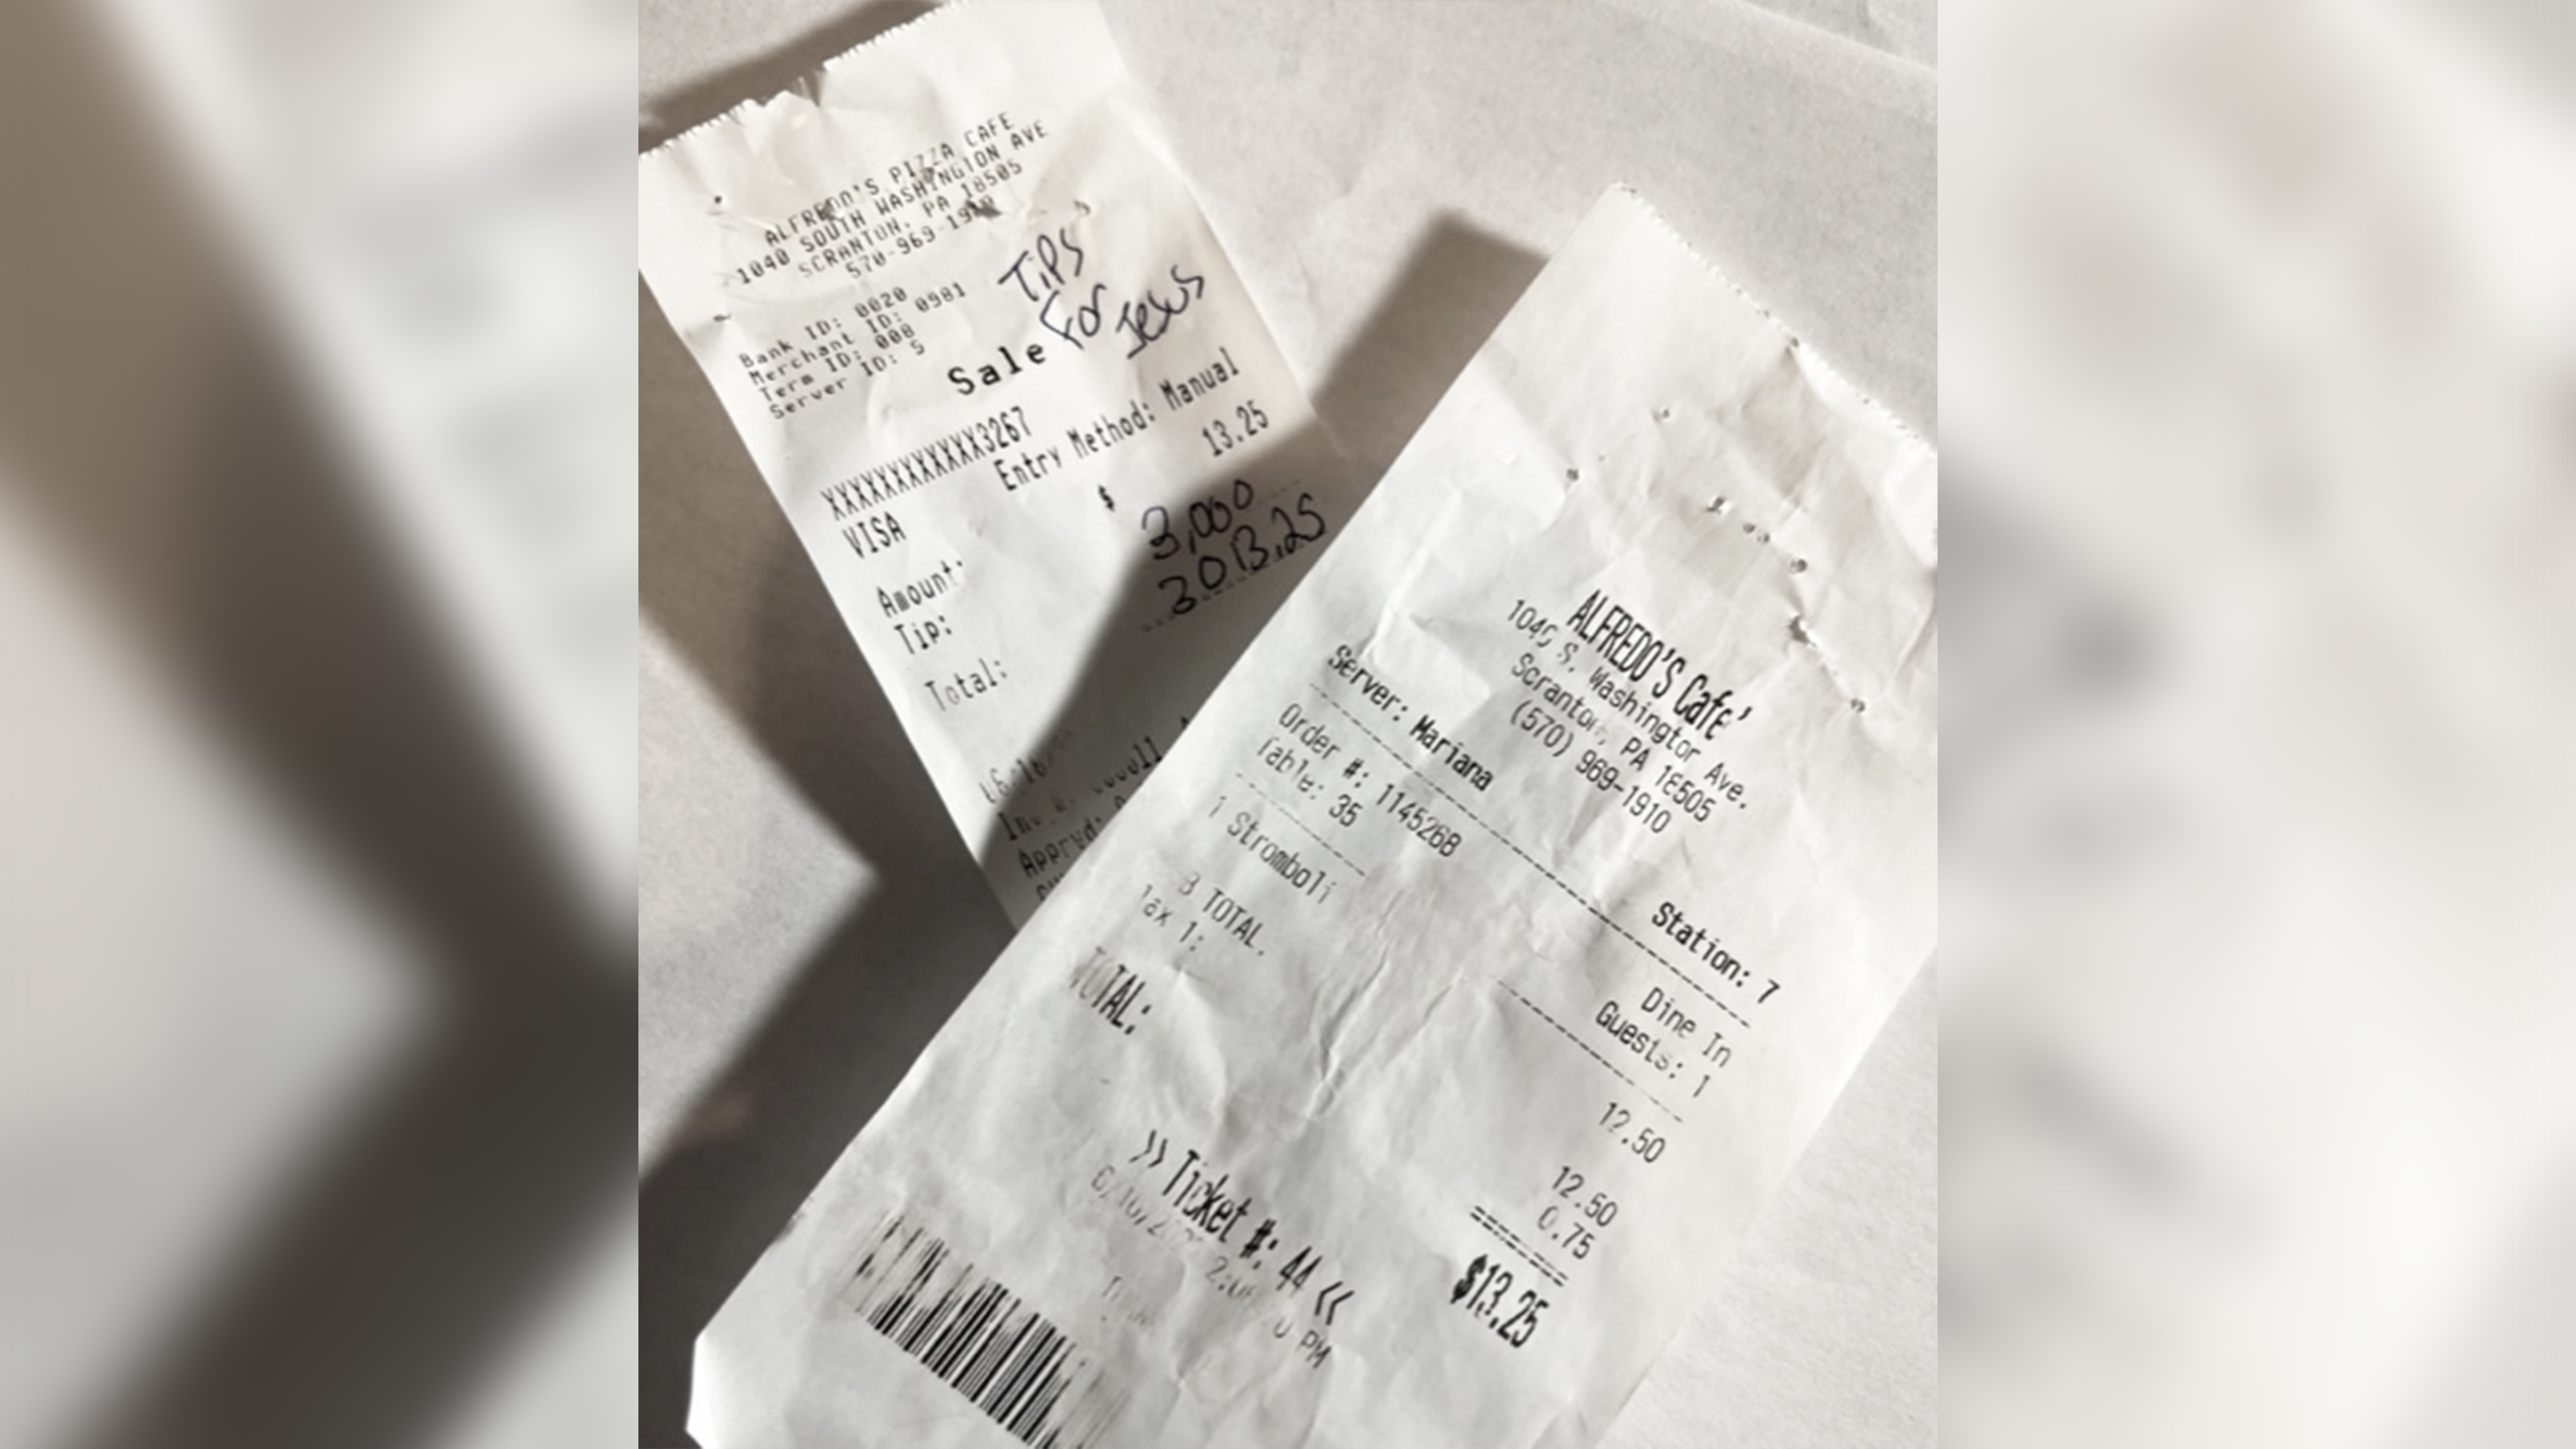 Camarera de EE. UU. sorprendida al descubrir una propina de $ 4330 en una comida de $ 19